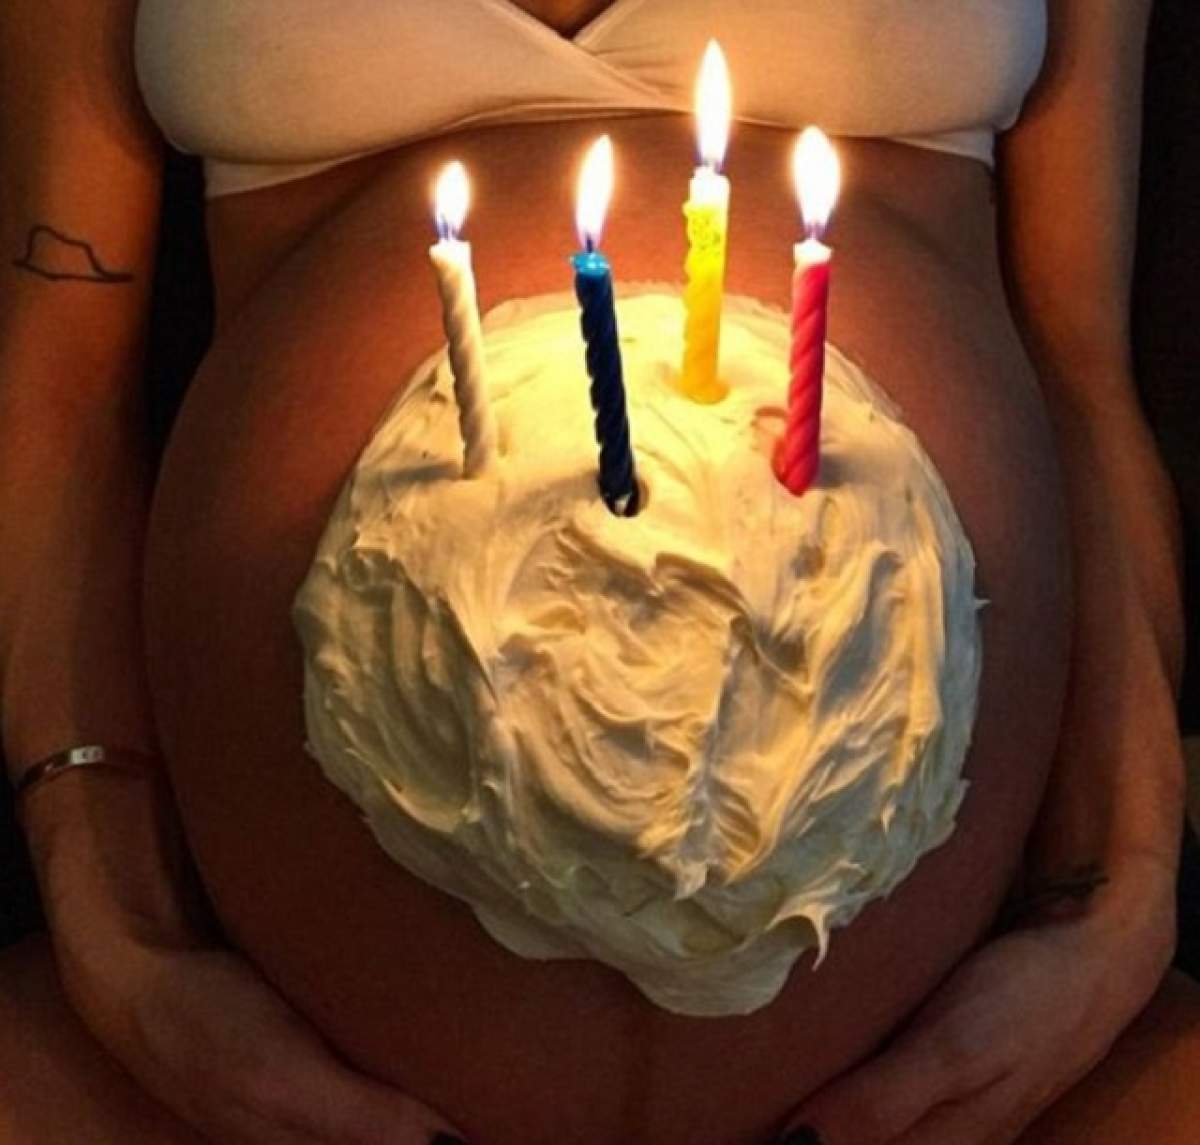 FOTO & VIDEO / Şi-a pozat iubita gravidă în 9 luni, în lenjerie intimă! Mai are puţin şi naşte gemeni, dar nu se fereşte să arate semne obscene